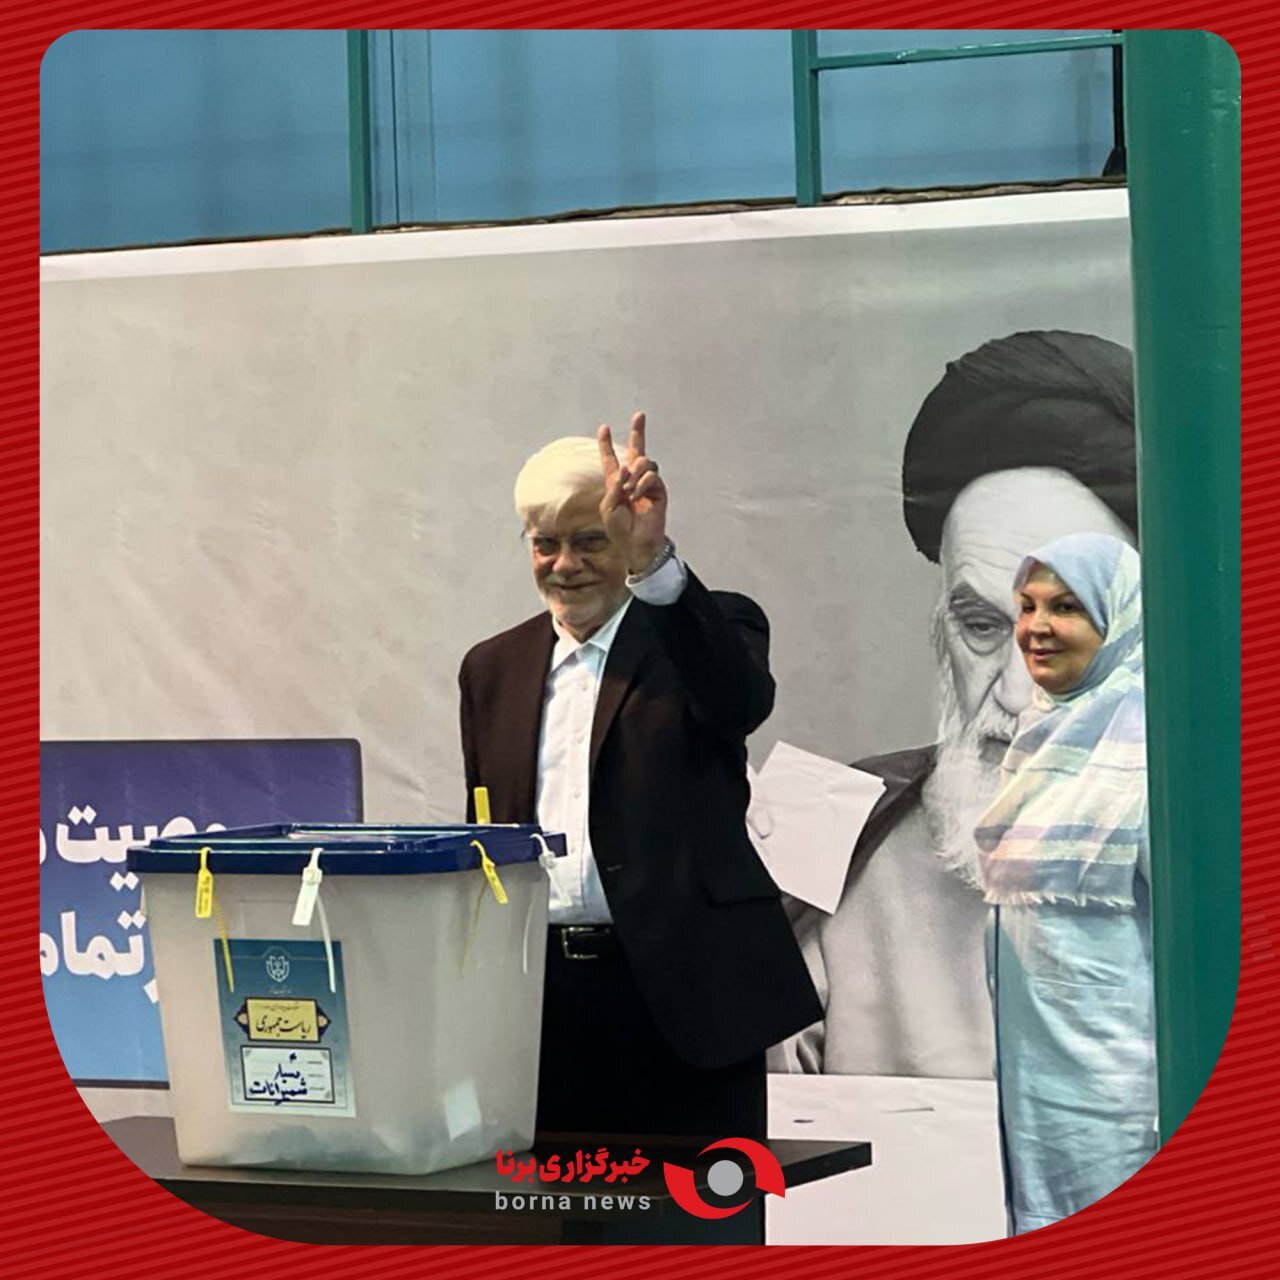 محمدرضا عارف با همسرش آمد: رأی ندادن به معنای رأی دادن به نظر مخالف است / محسن هاشمی به حسینیه جماران رفت + عکس 3